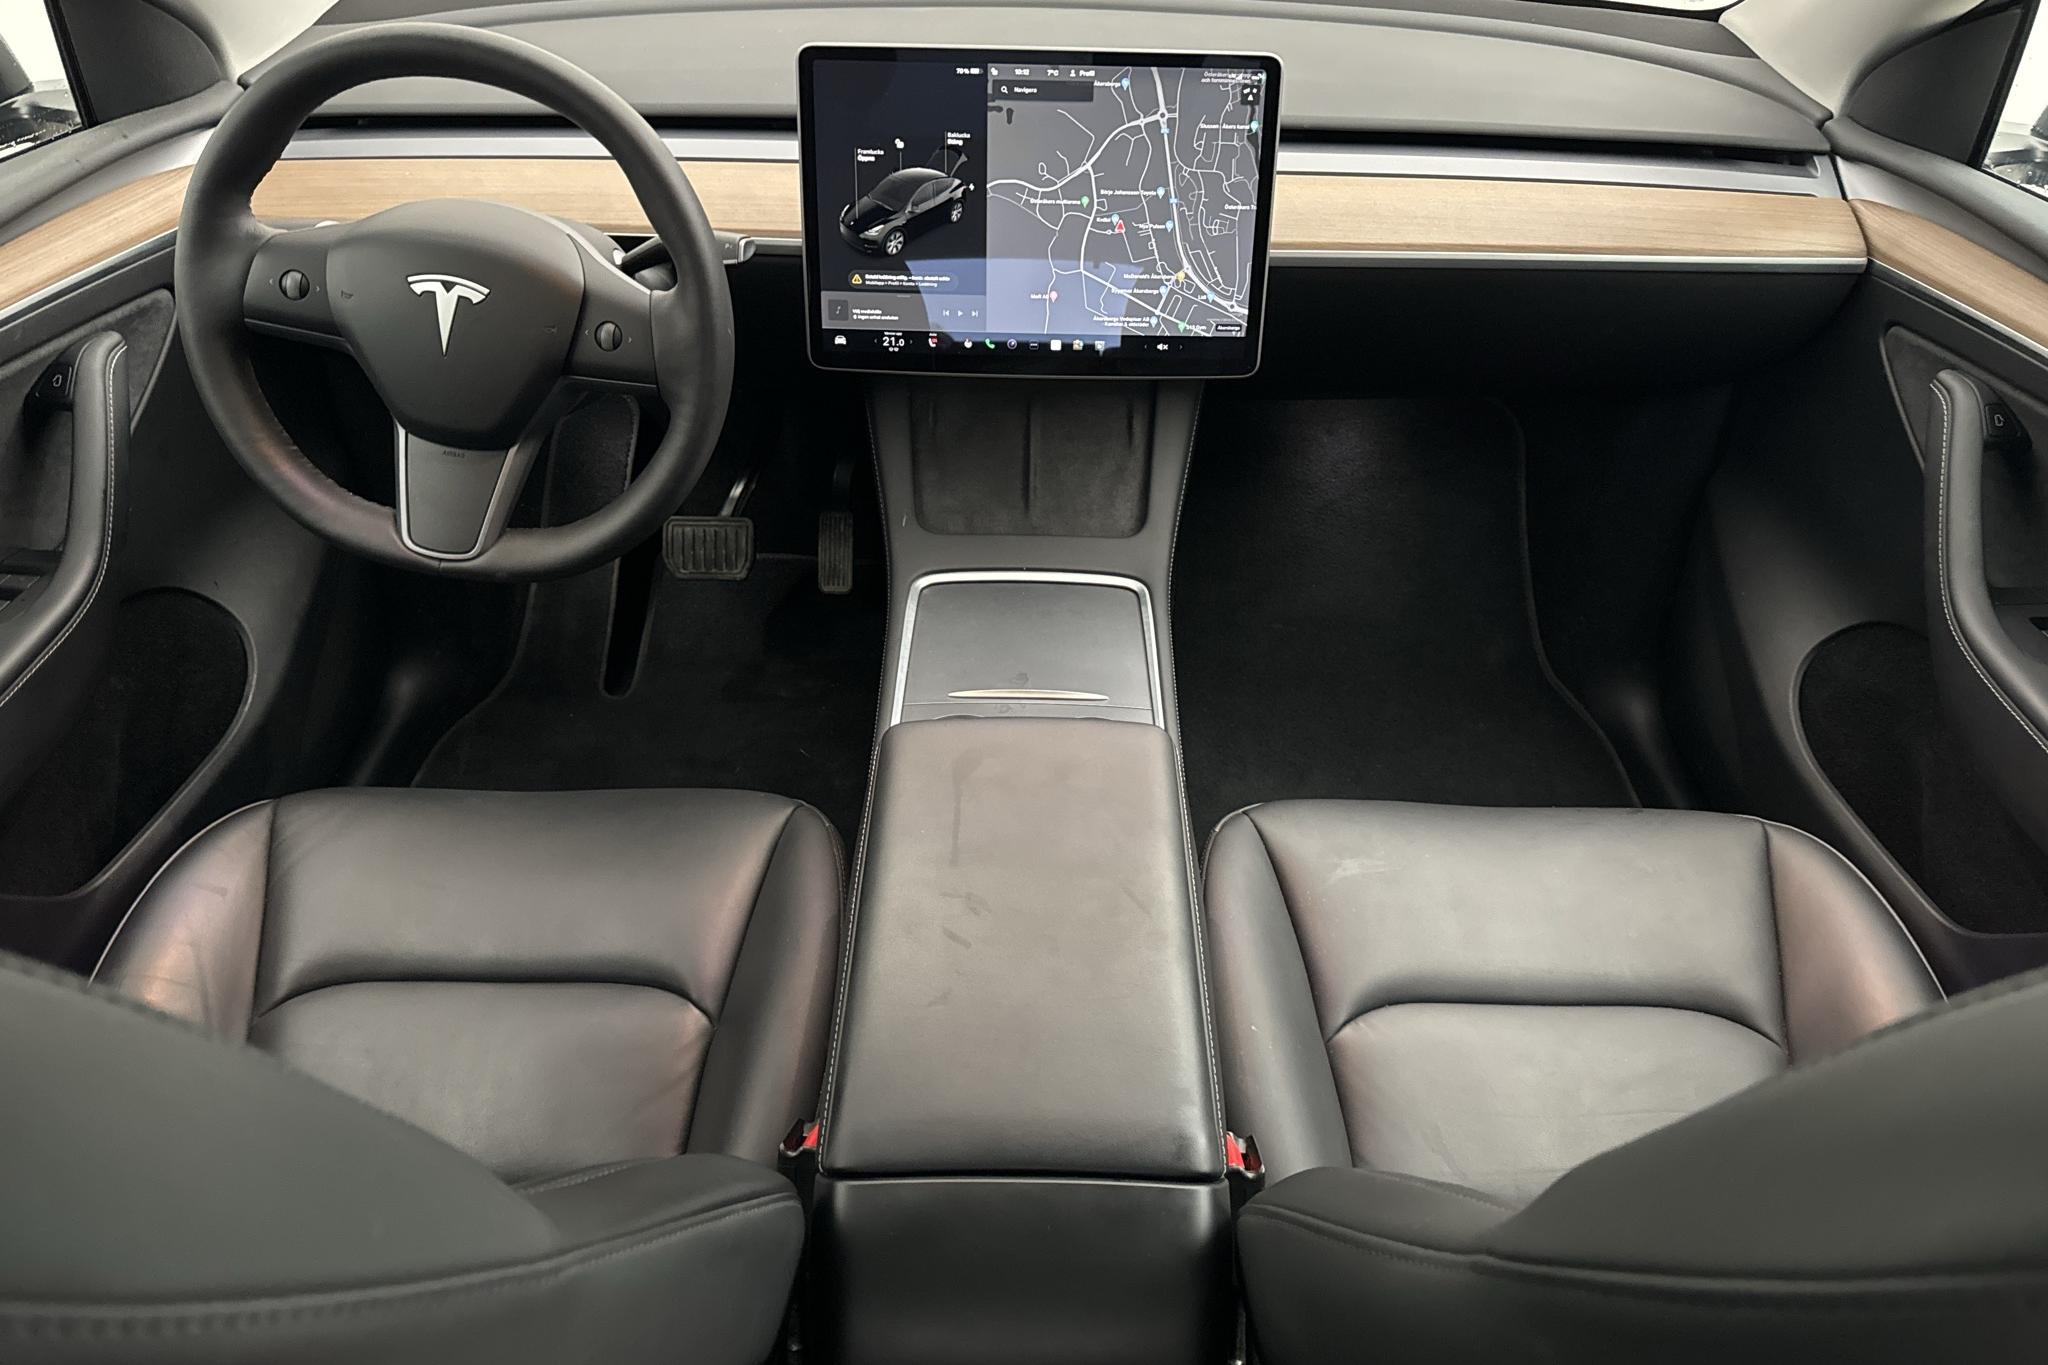 Tesla Model Y Long Range Dual Motor AWD - 79 570 km - Automatyczna - czarny - 2021